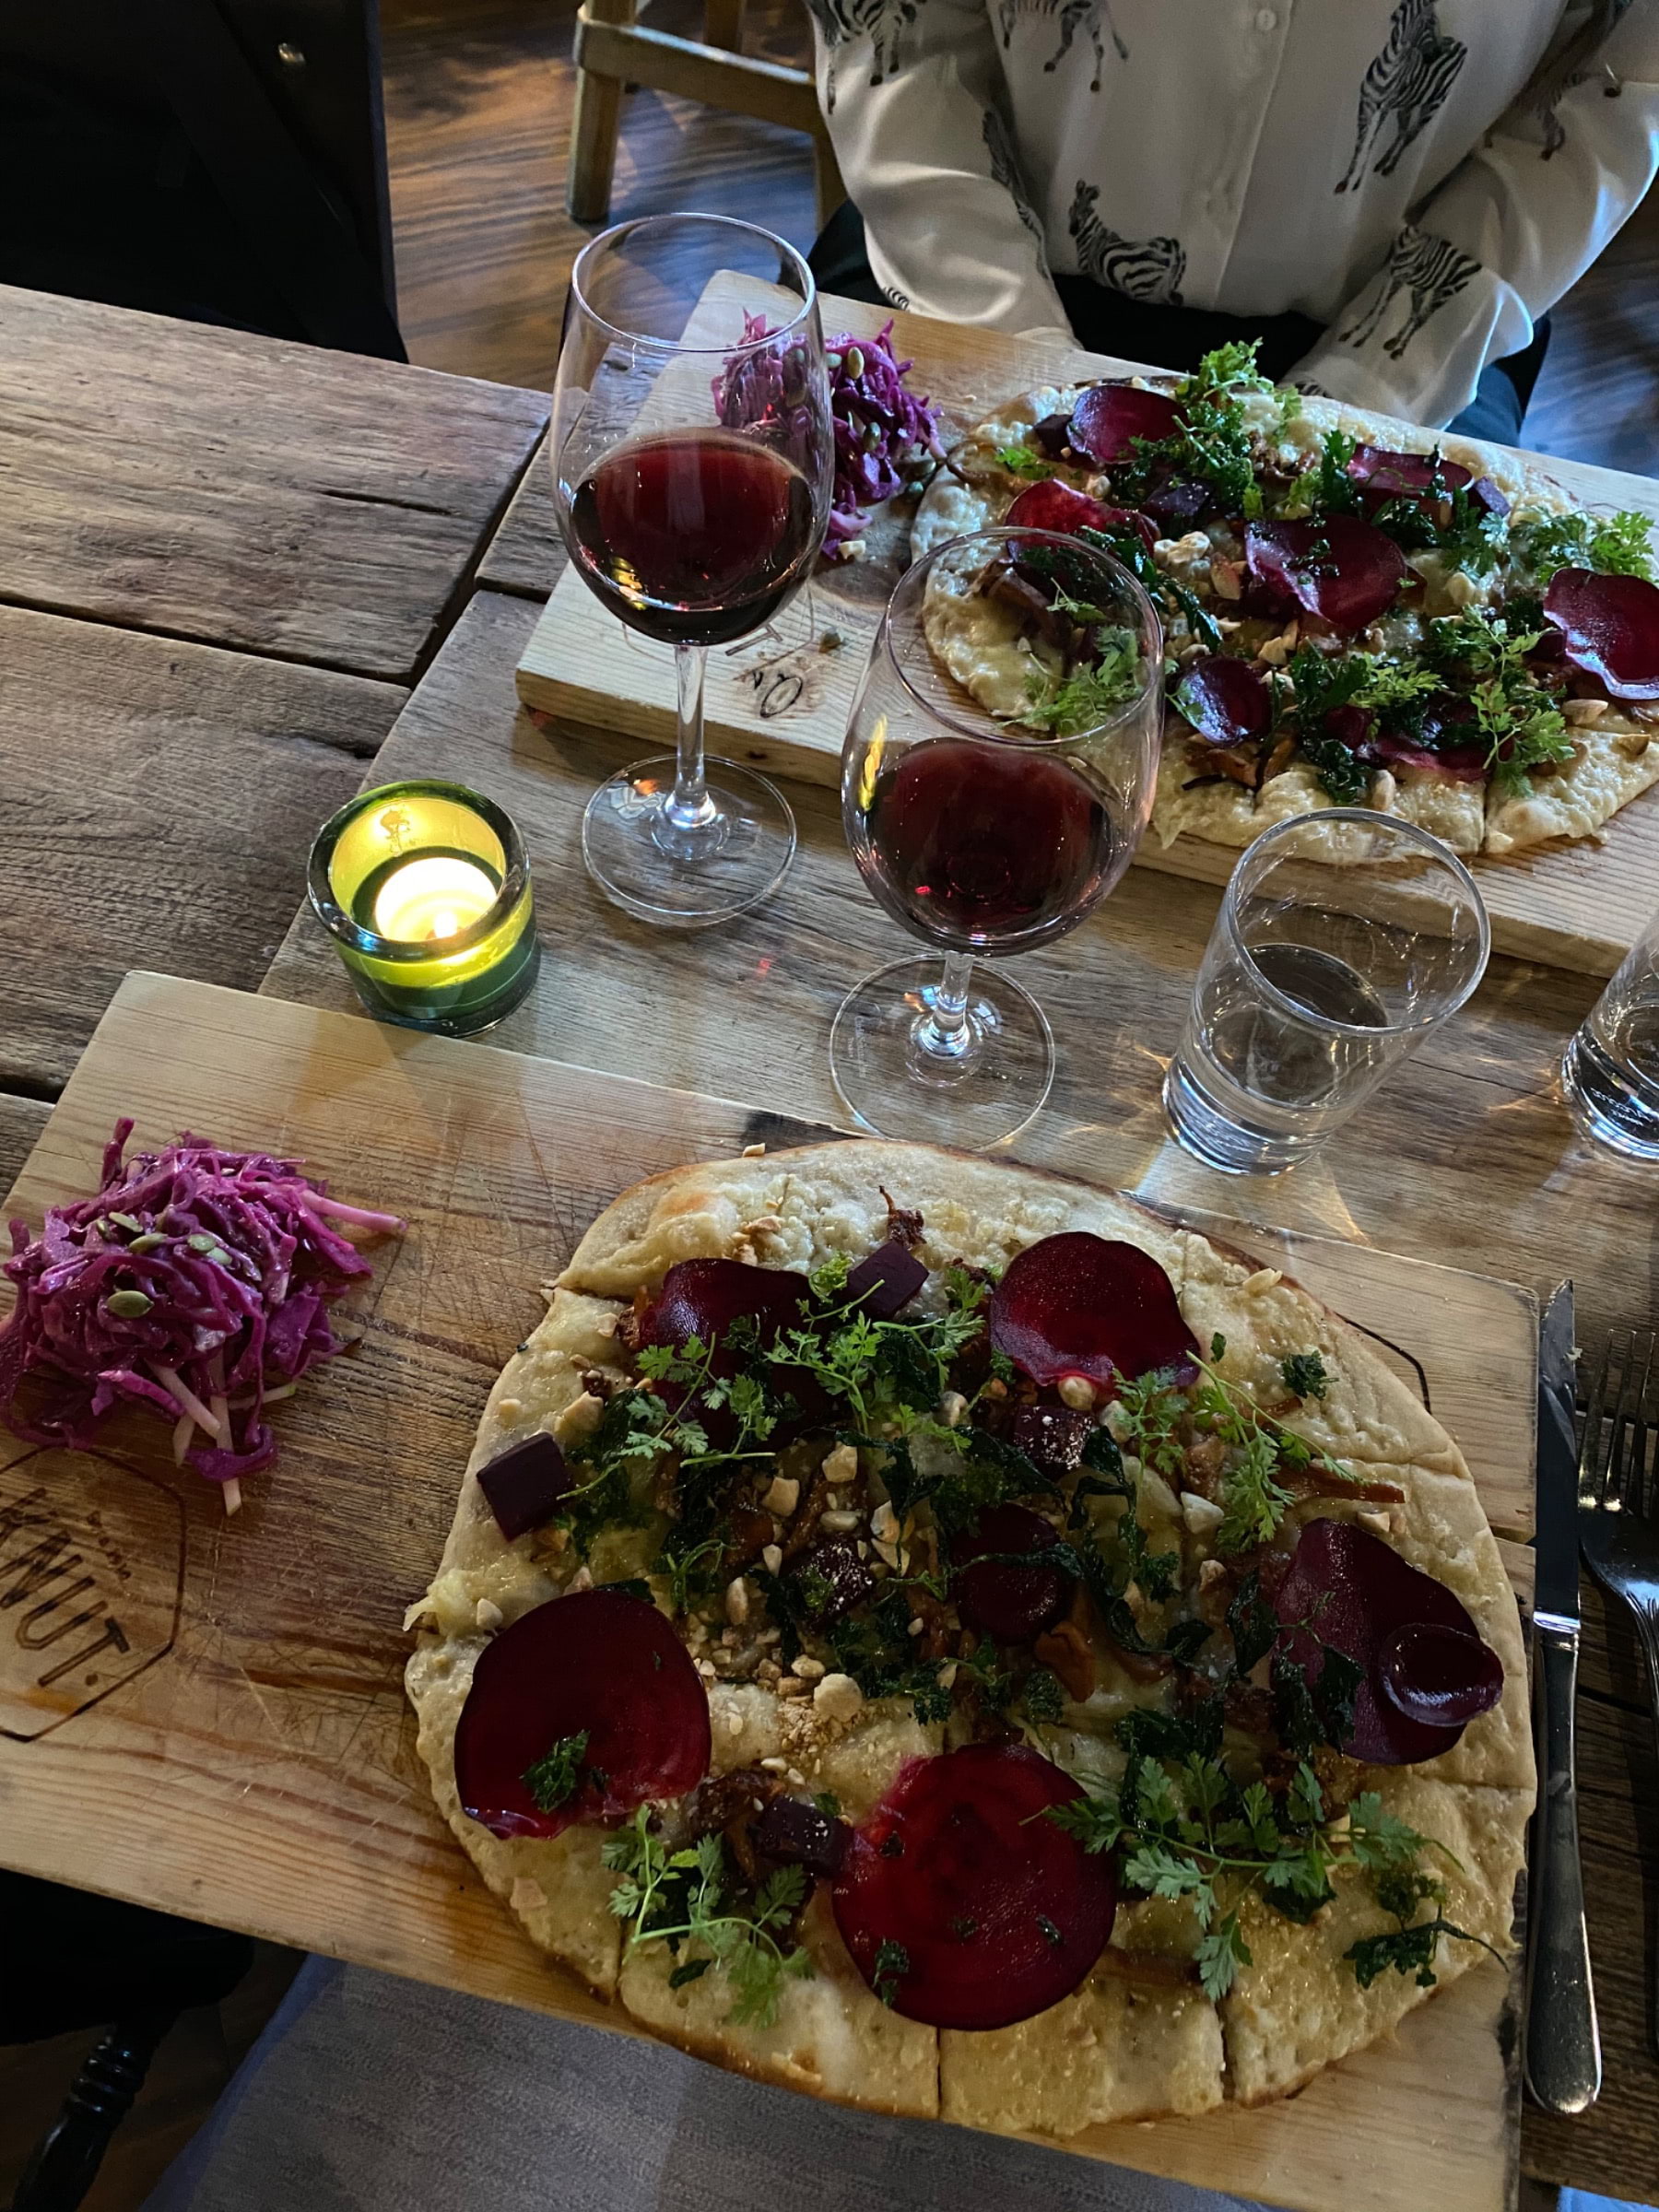 Tunnbrödspizza med Västerbottenost, smörstekta kantareller, bakade betor, persilja och mandel  – Bild från Knut Upplandsgatan av Lisa S. (2020-09-20)